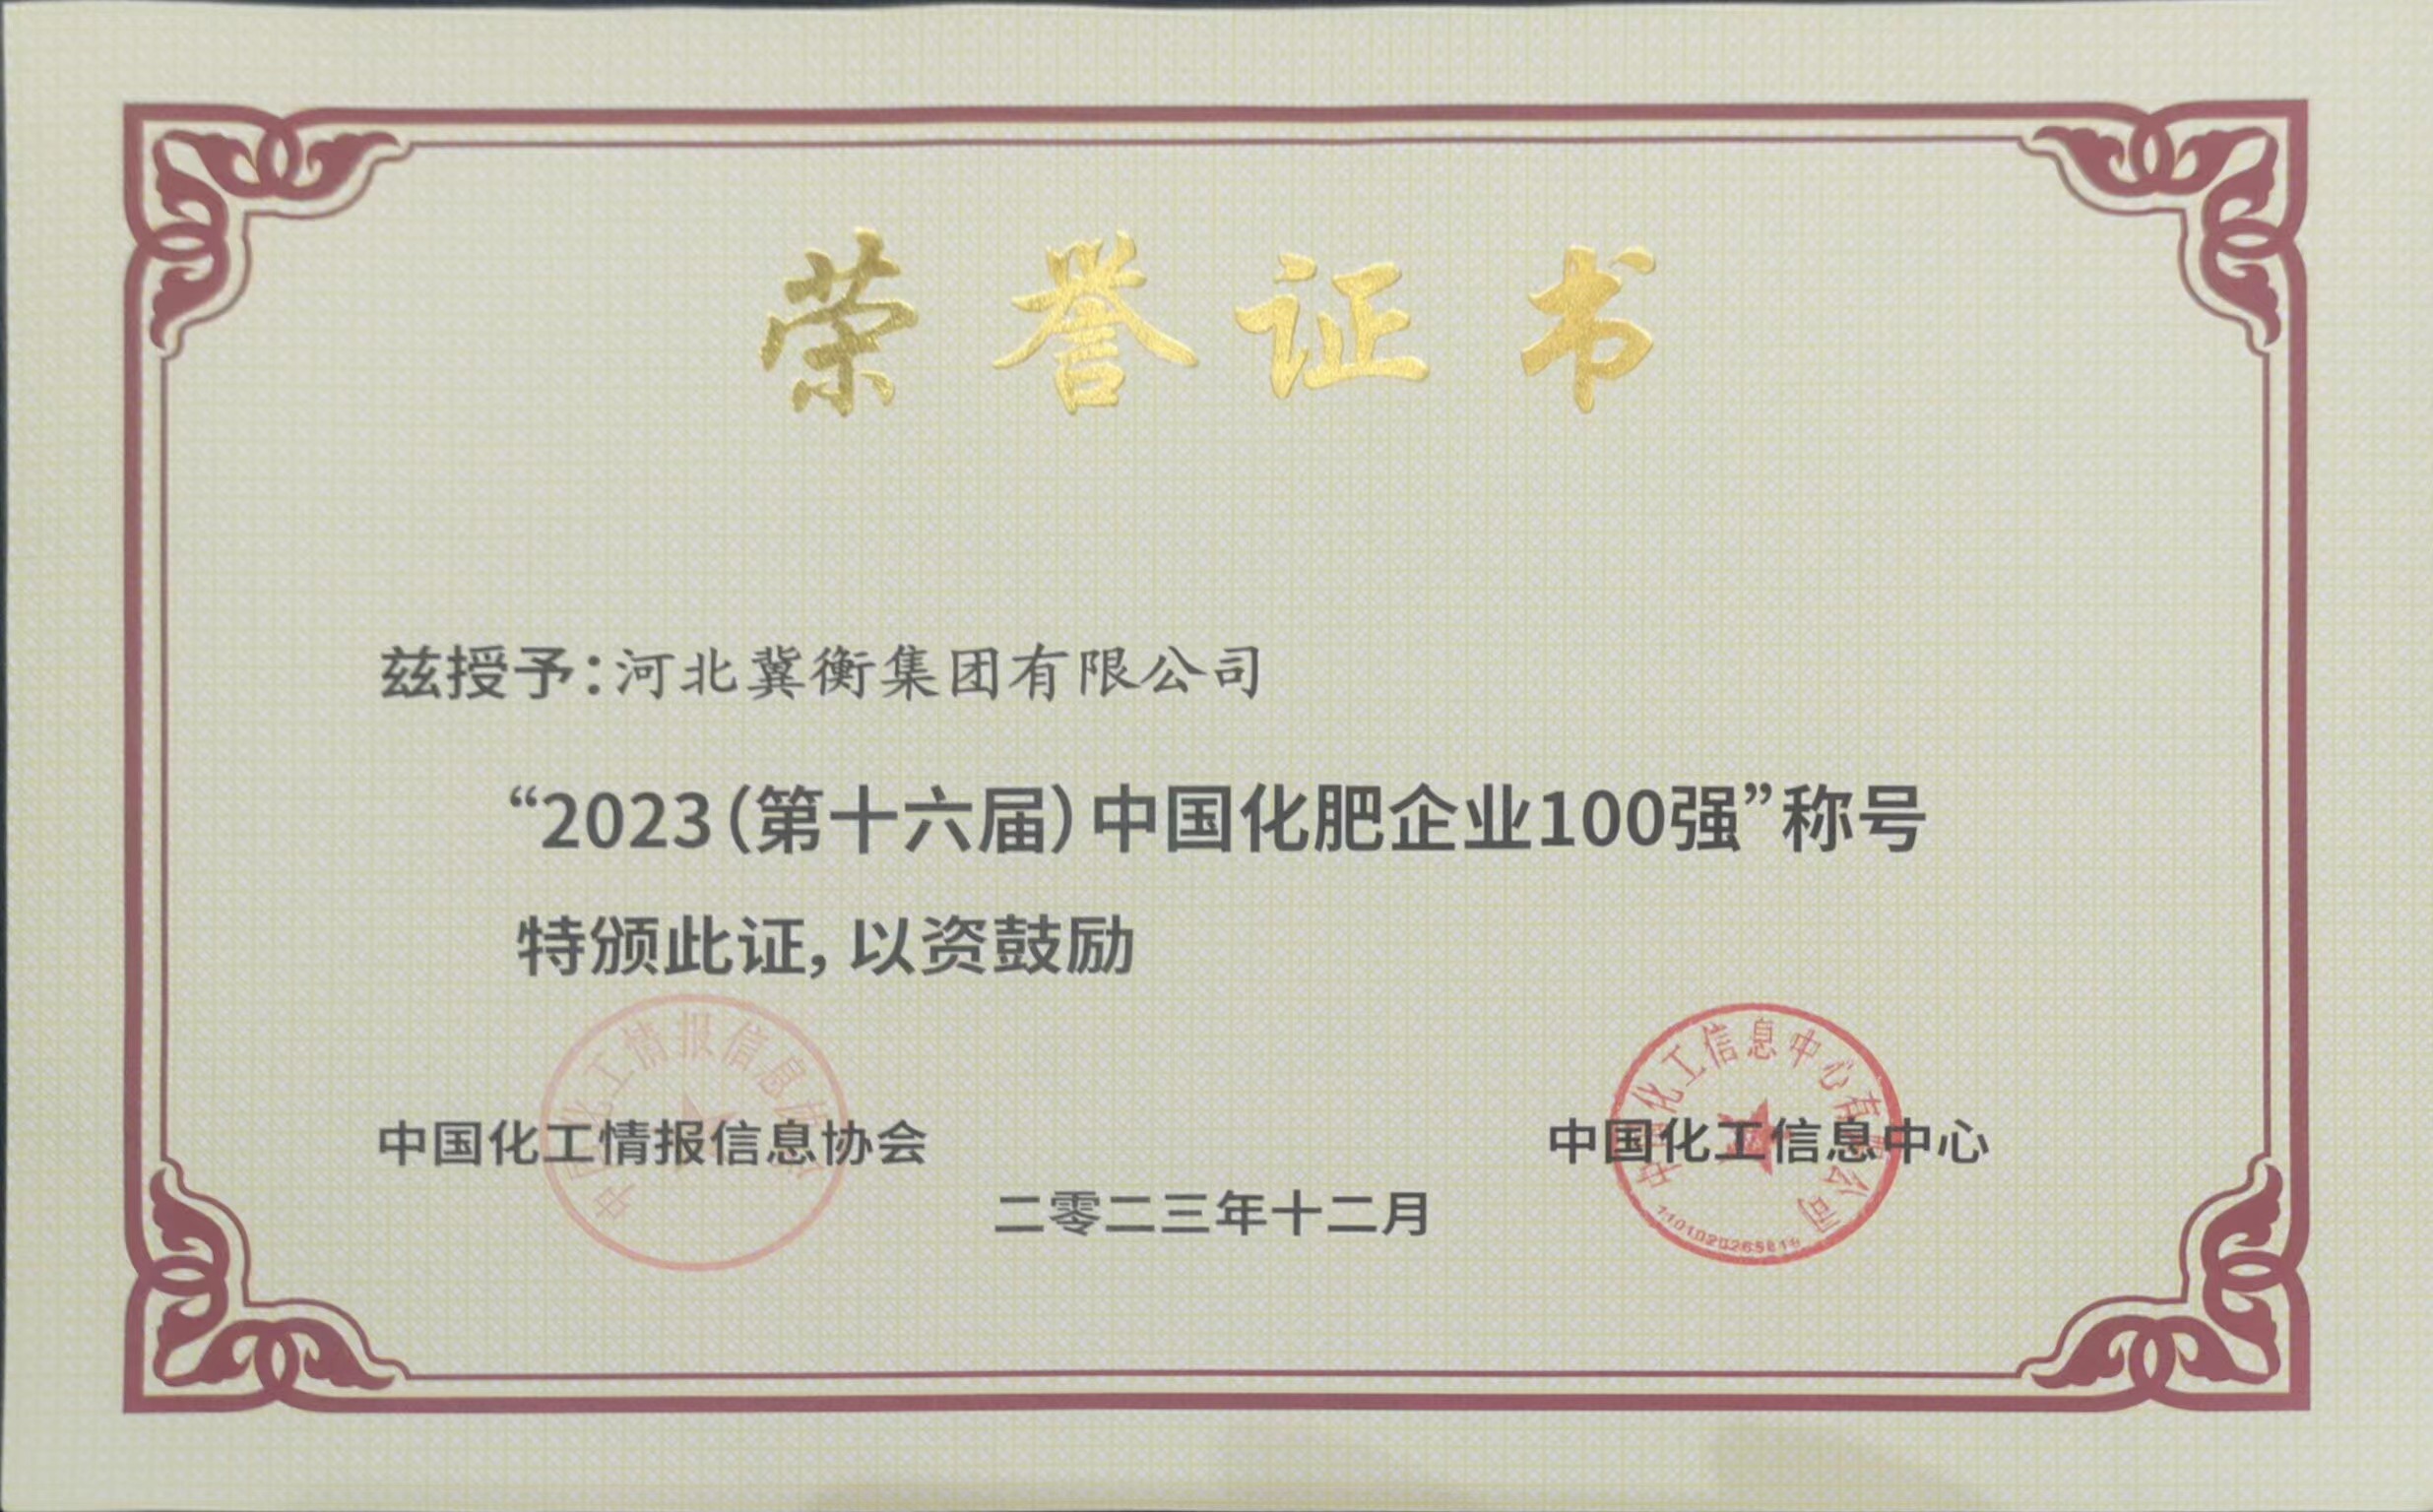 2023年度中国化肥企业100强